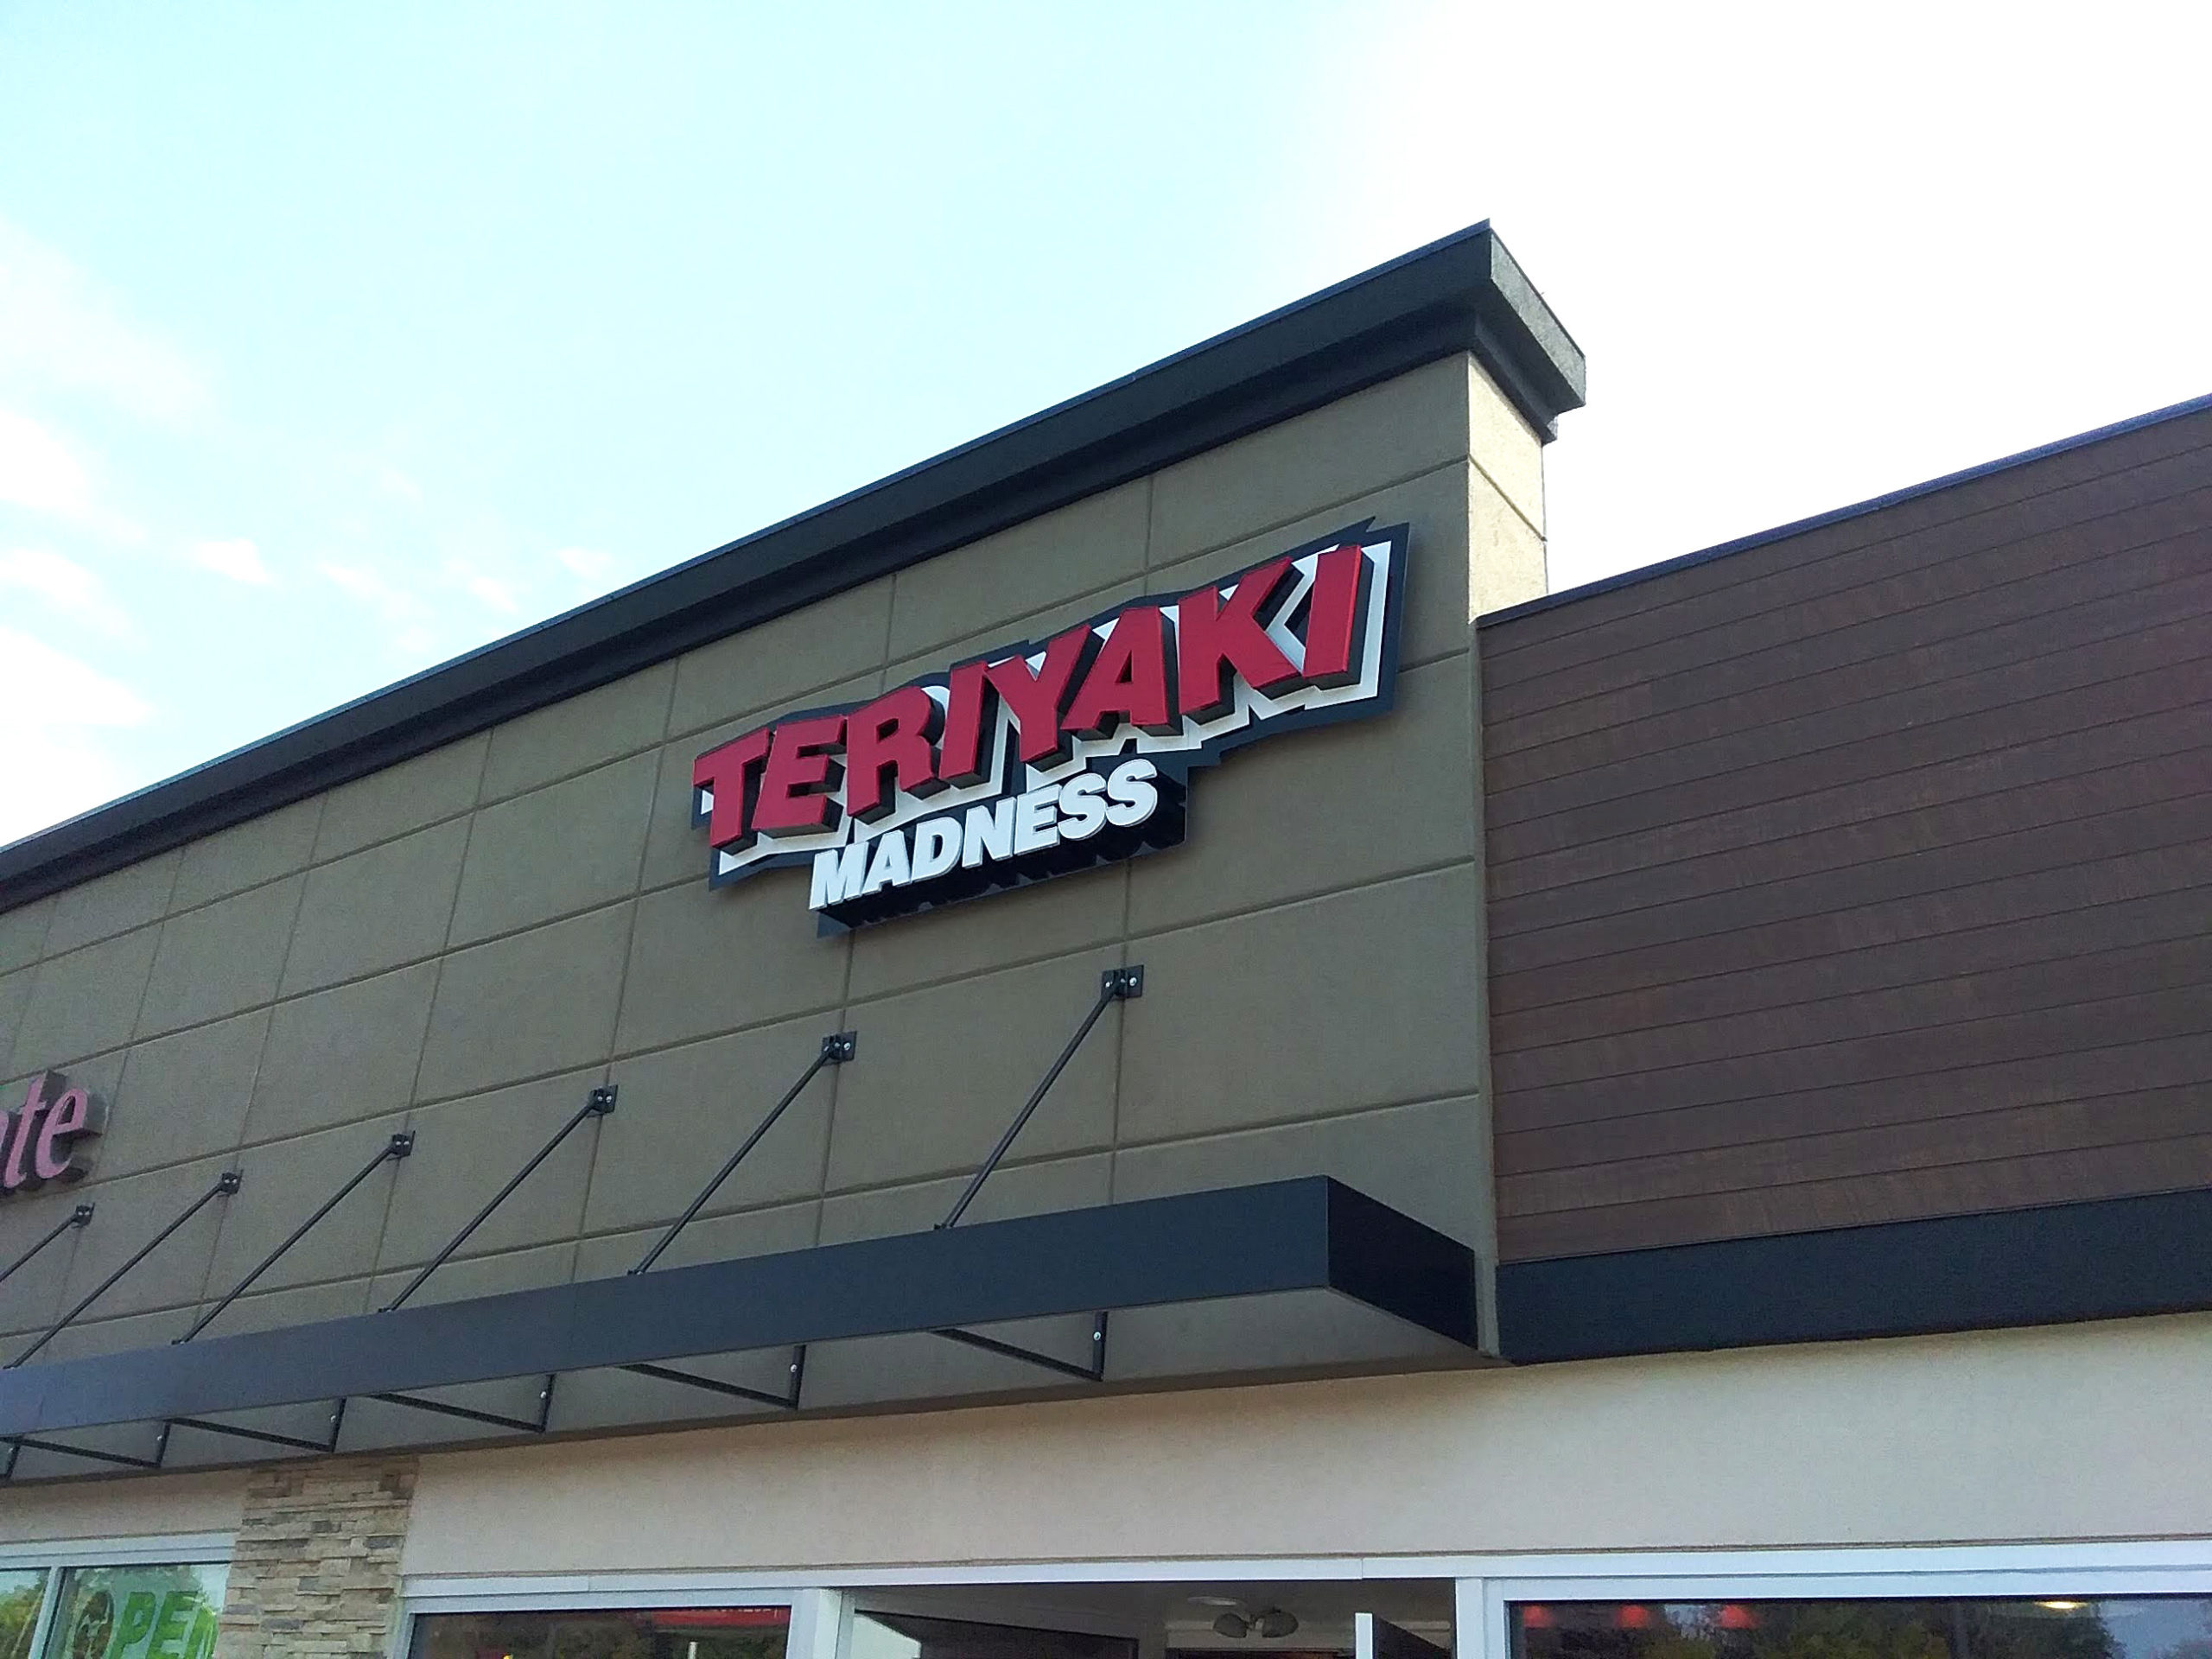 teriyaki madness business sign